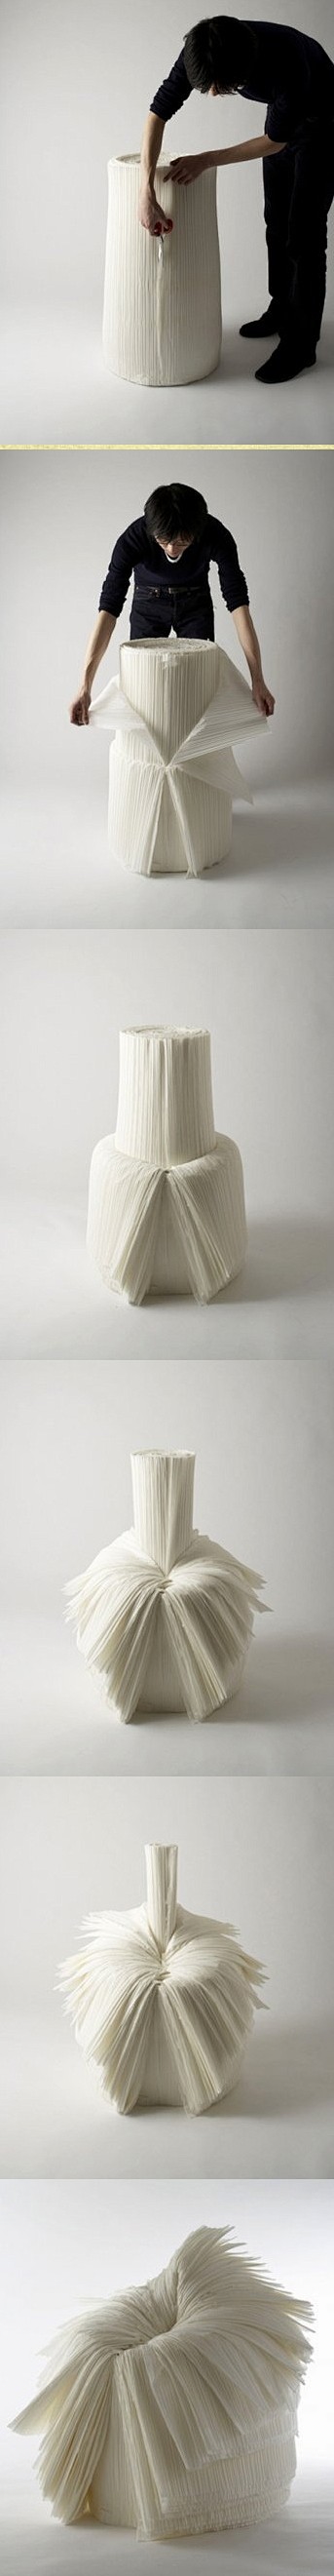 【创意椅子】
日本设计大师Oki Sat...